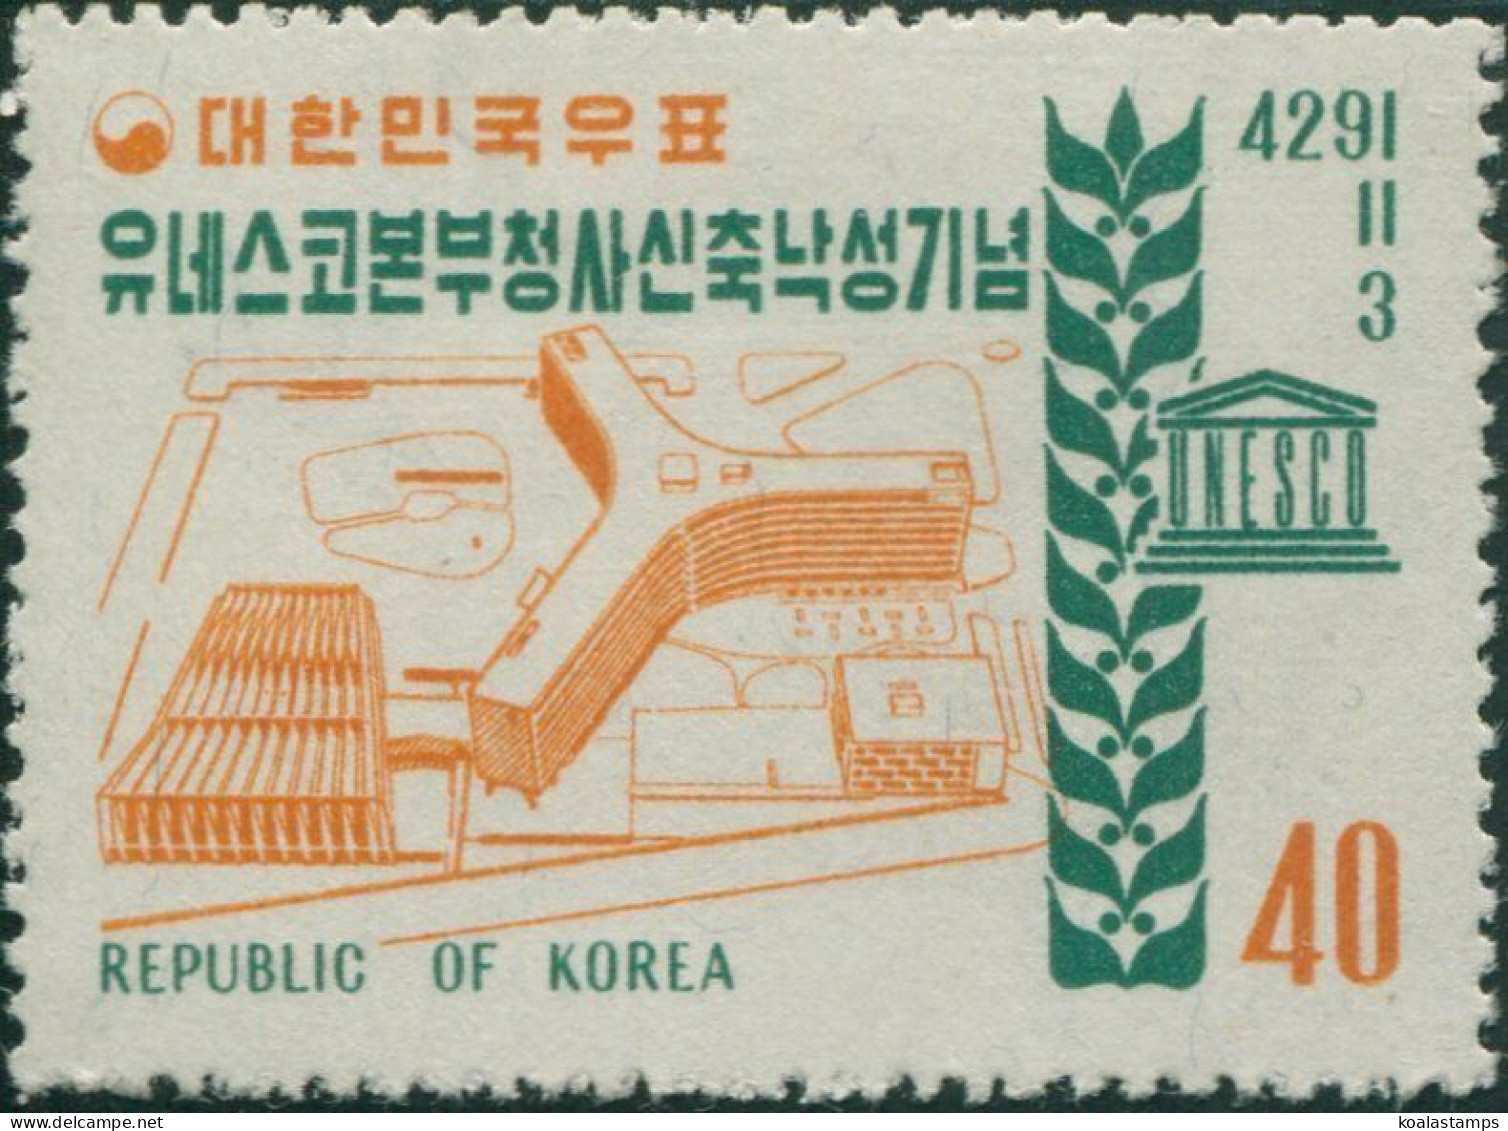 Korea South 1958 SG326 40h UNESCO Headquarters MLH - Corée Du Sud